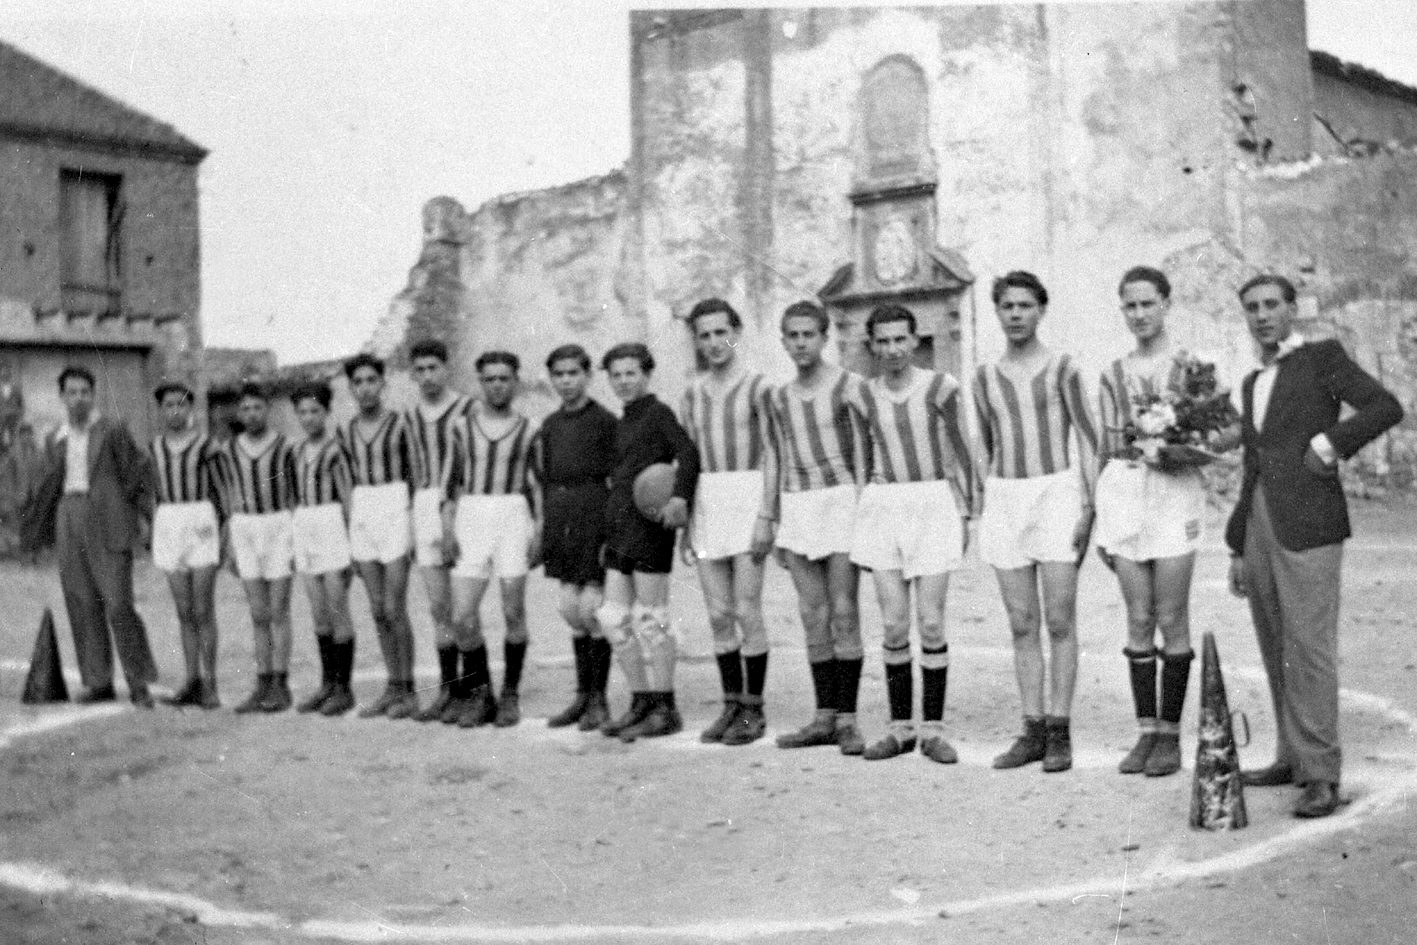 La squadra di calcio del Castelbuono nei primi anni del 1940 immortalata in piazza Castello